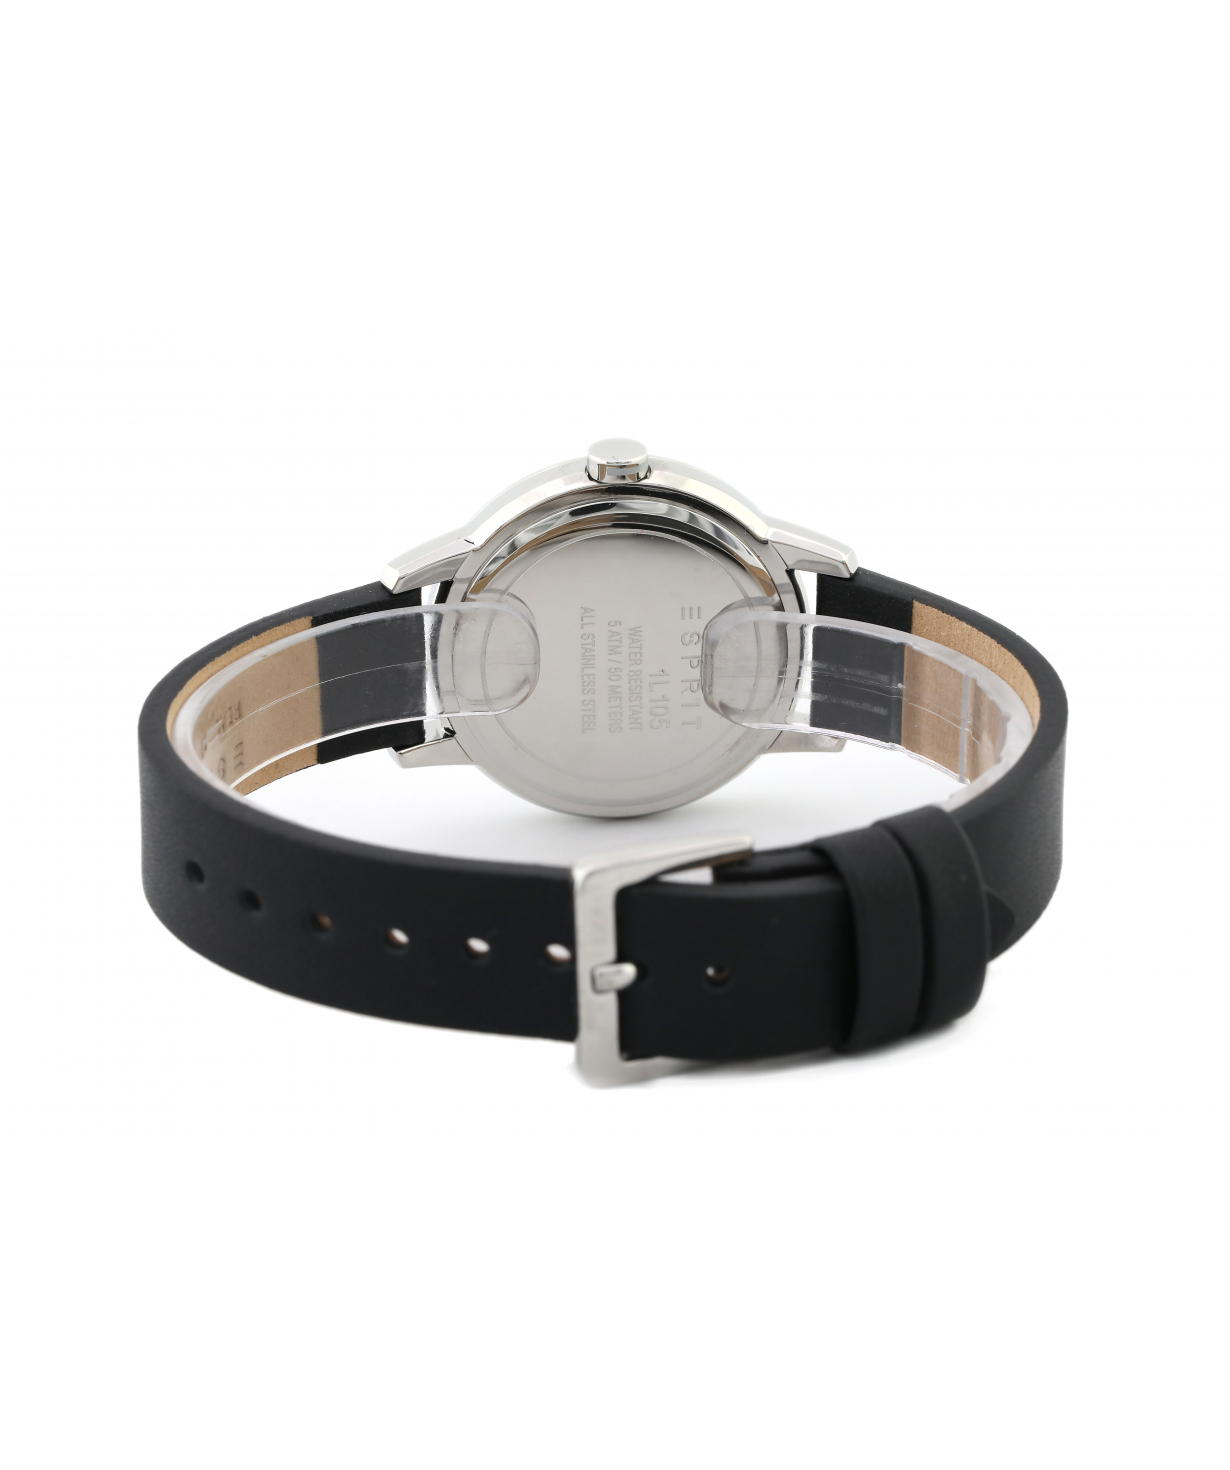 Wristwatch `Esprit` ES1L105L0015